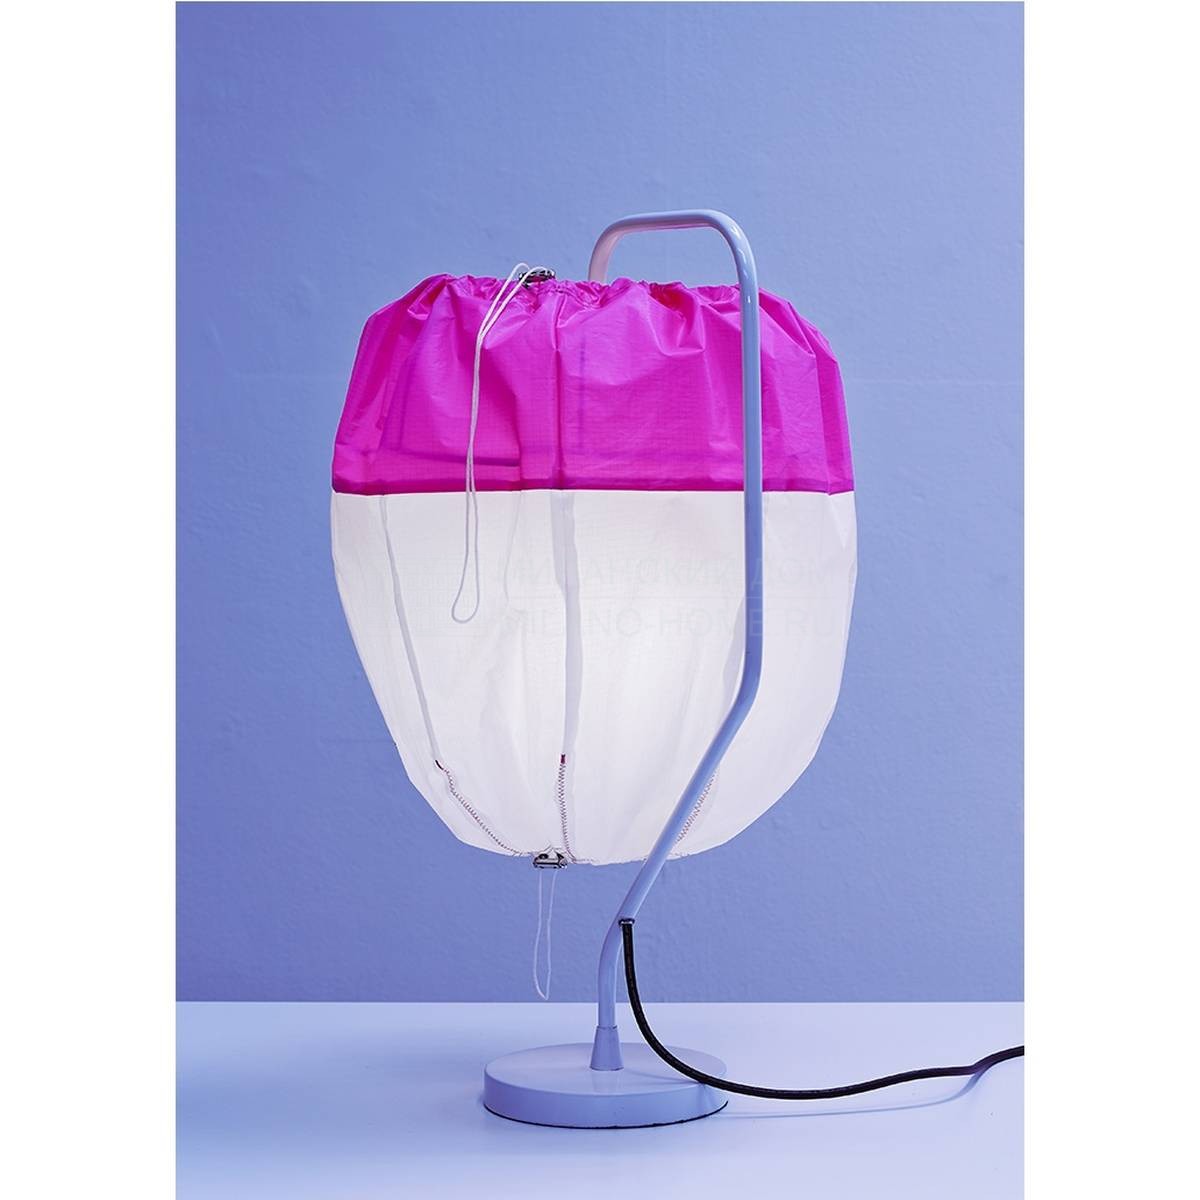 Настольная лампа Spi table lamp pink из Франции фабрики FORESTIER